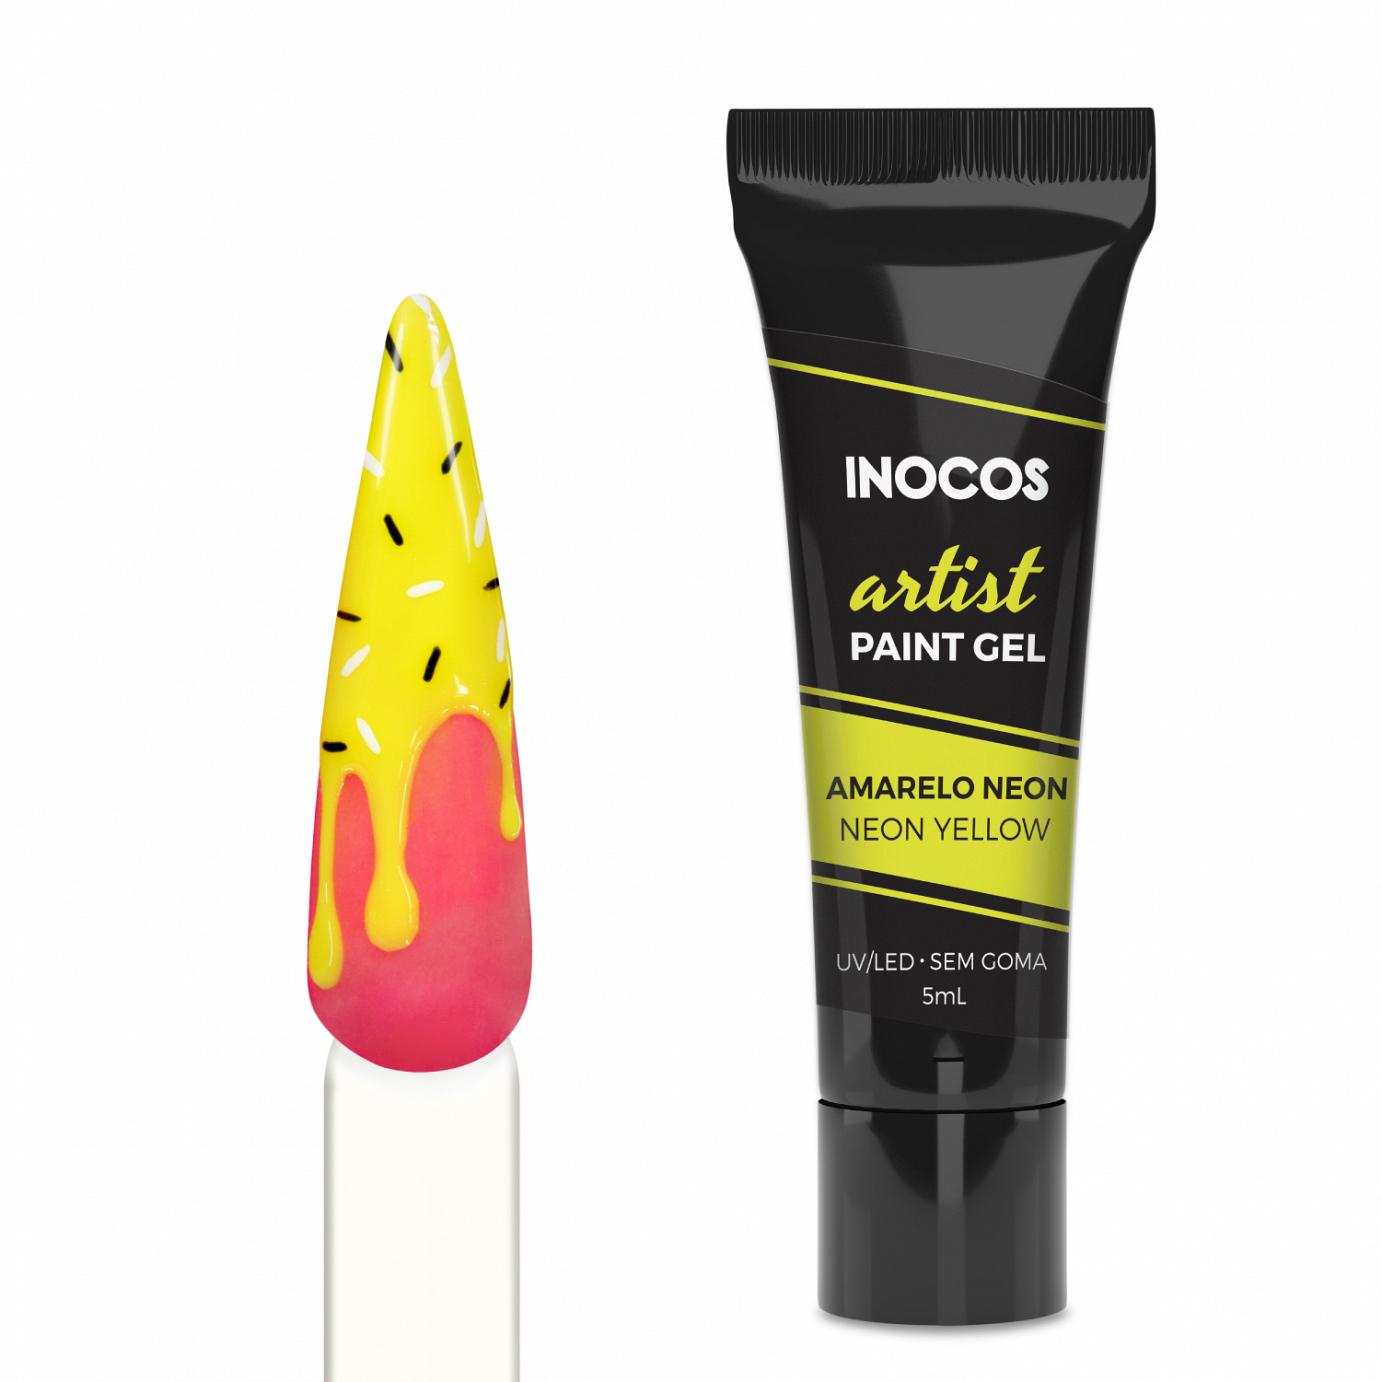 Inocos Artist Paint Gel de unhas yellow neon